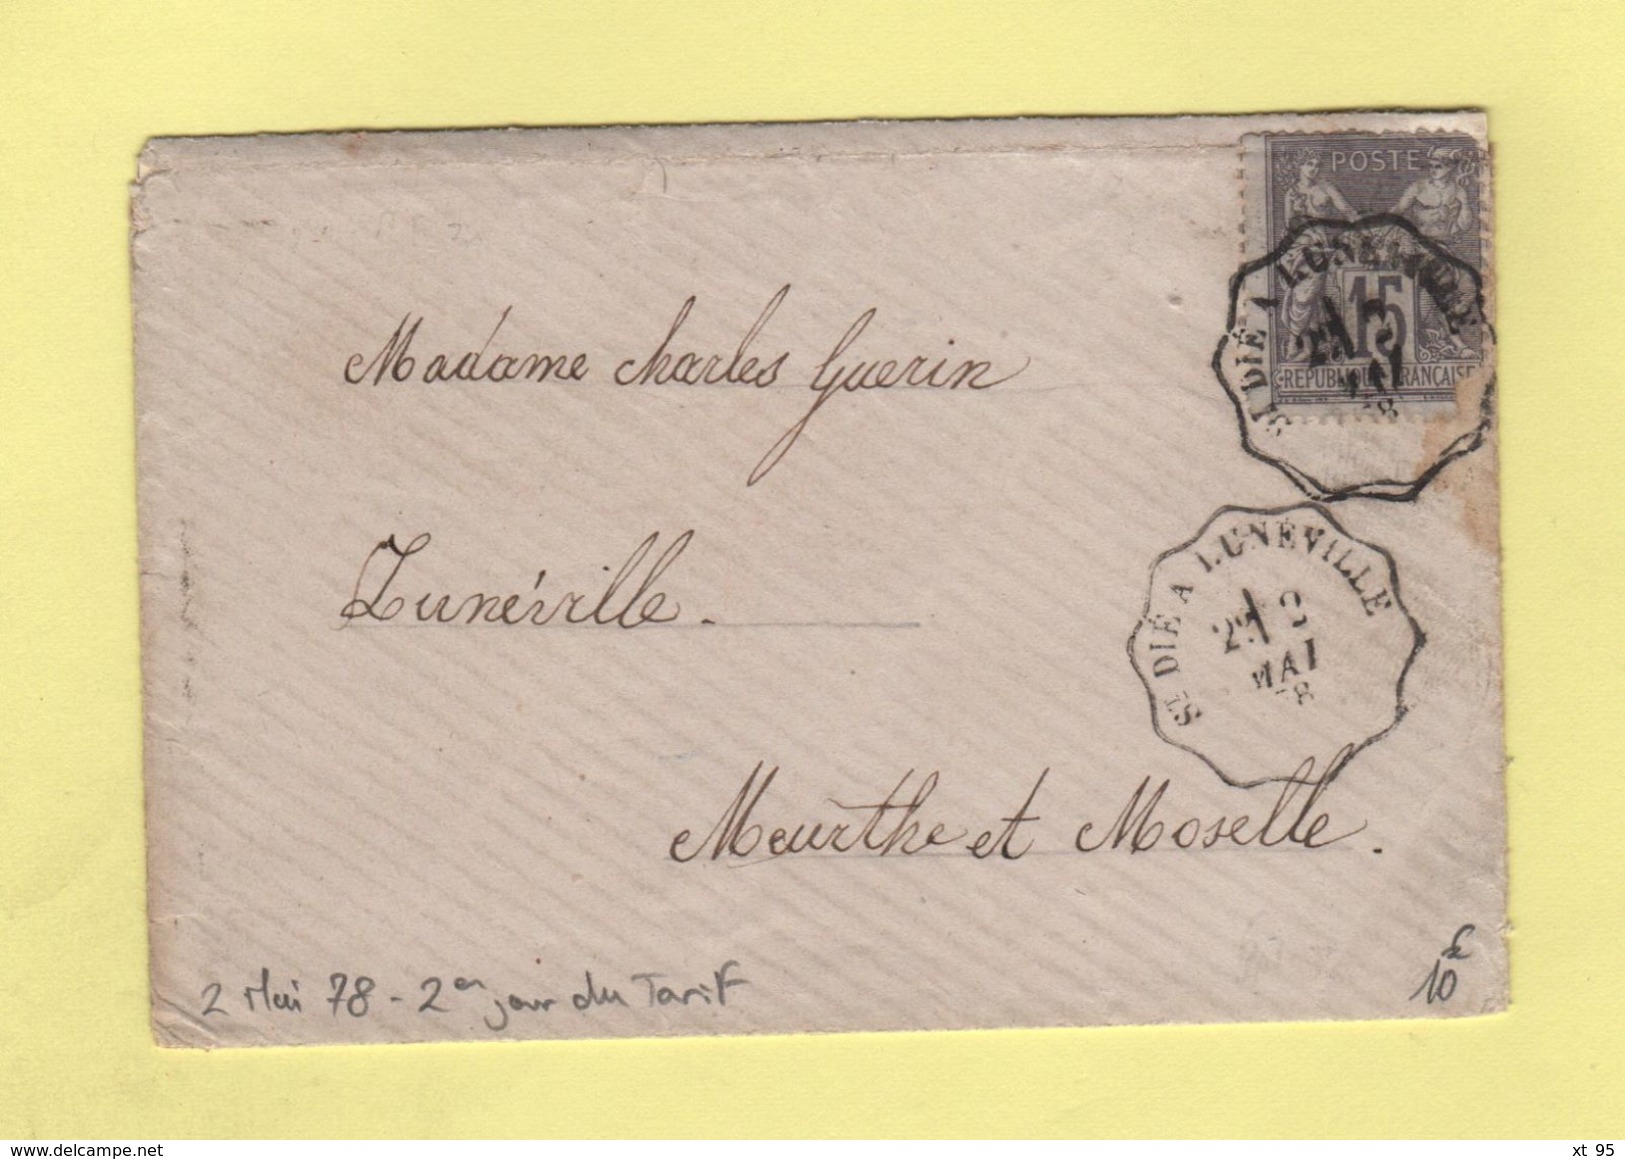 Convoyeur - St Die A Luneville - 2 Mai 1878 - 2eme Jour Du Tarif De La Lettre à 15c - Poste Ferroviaire